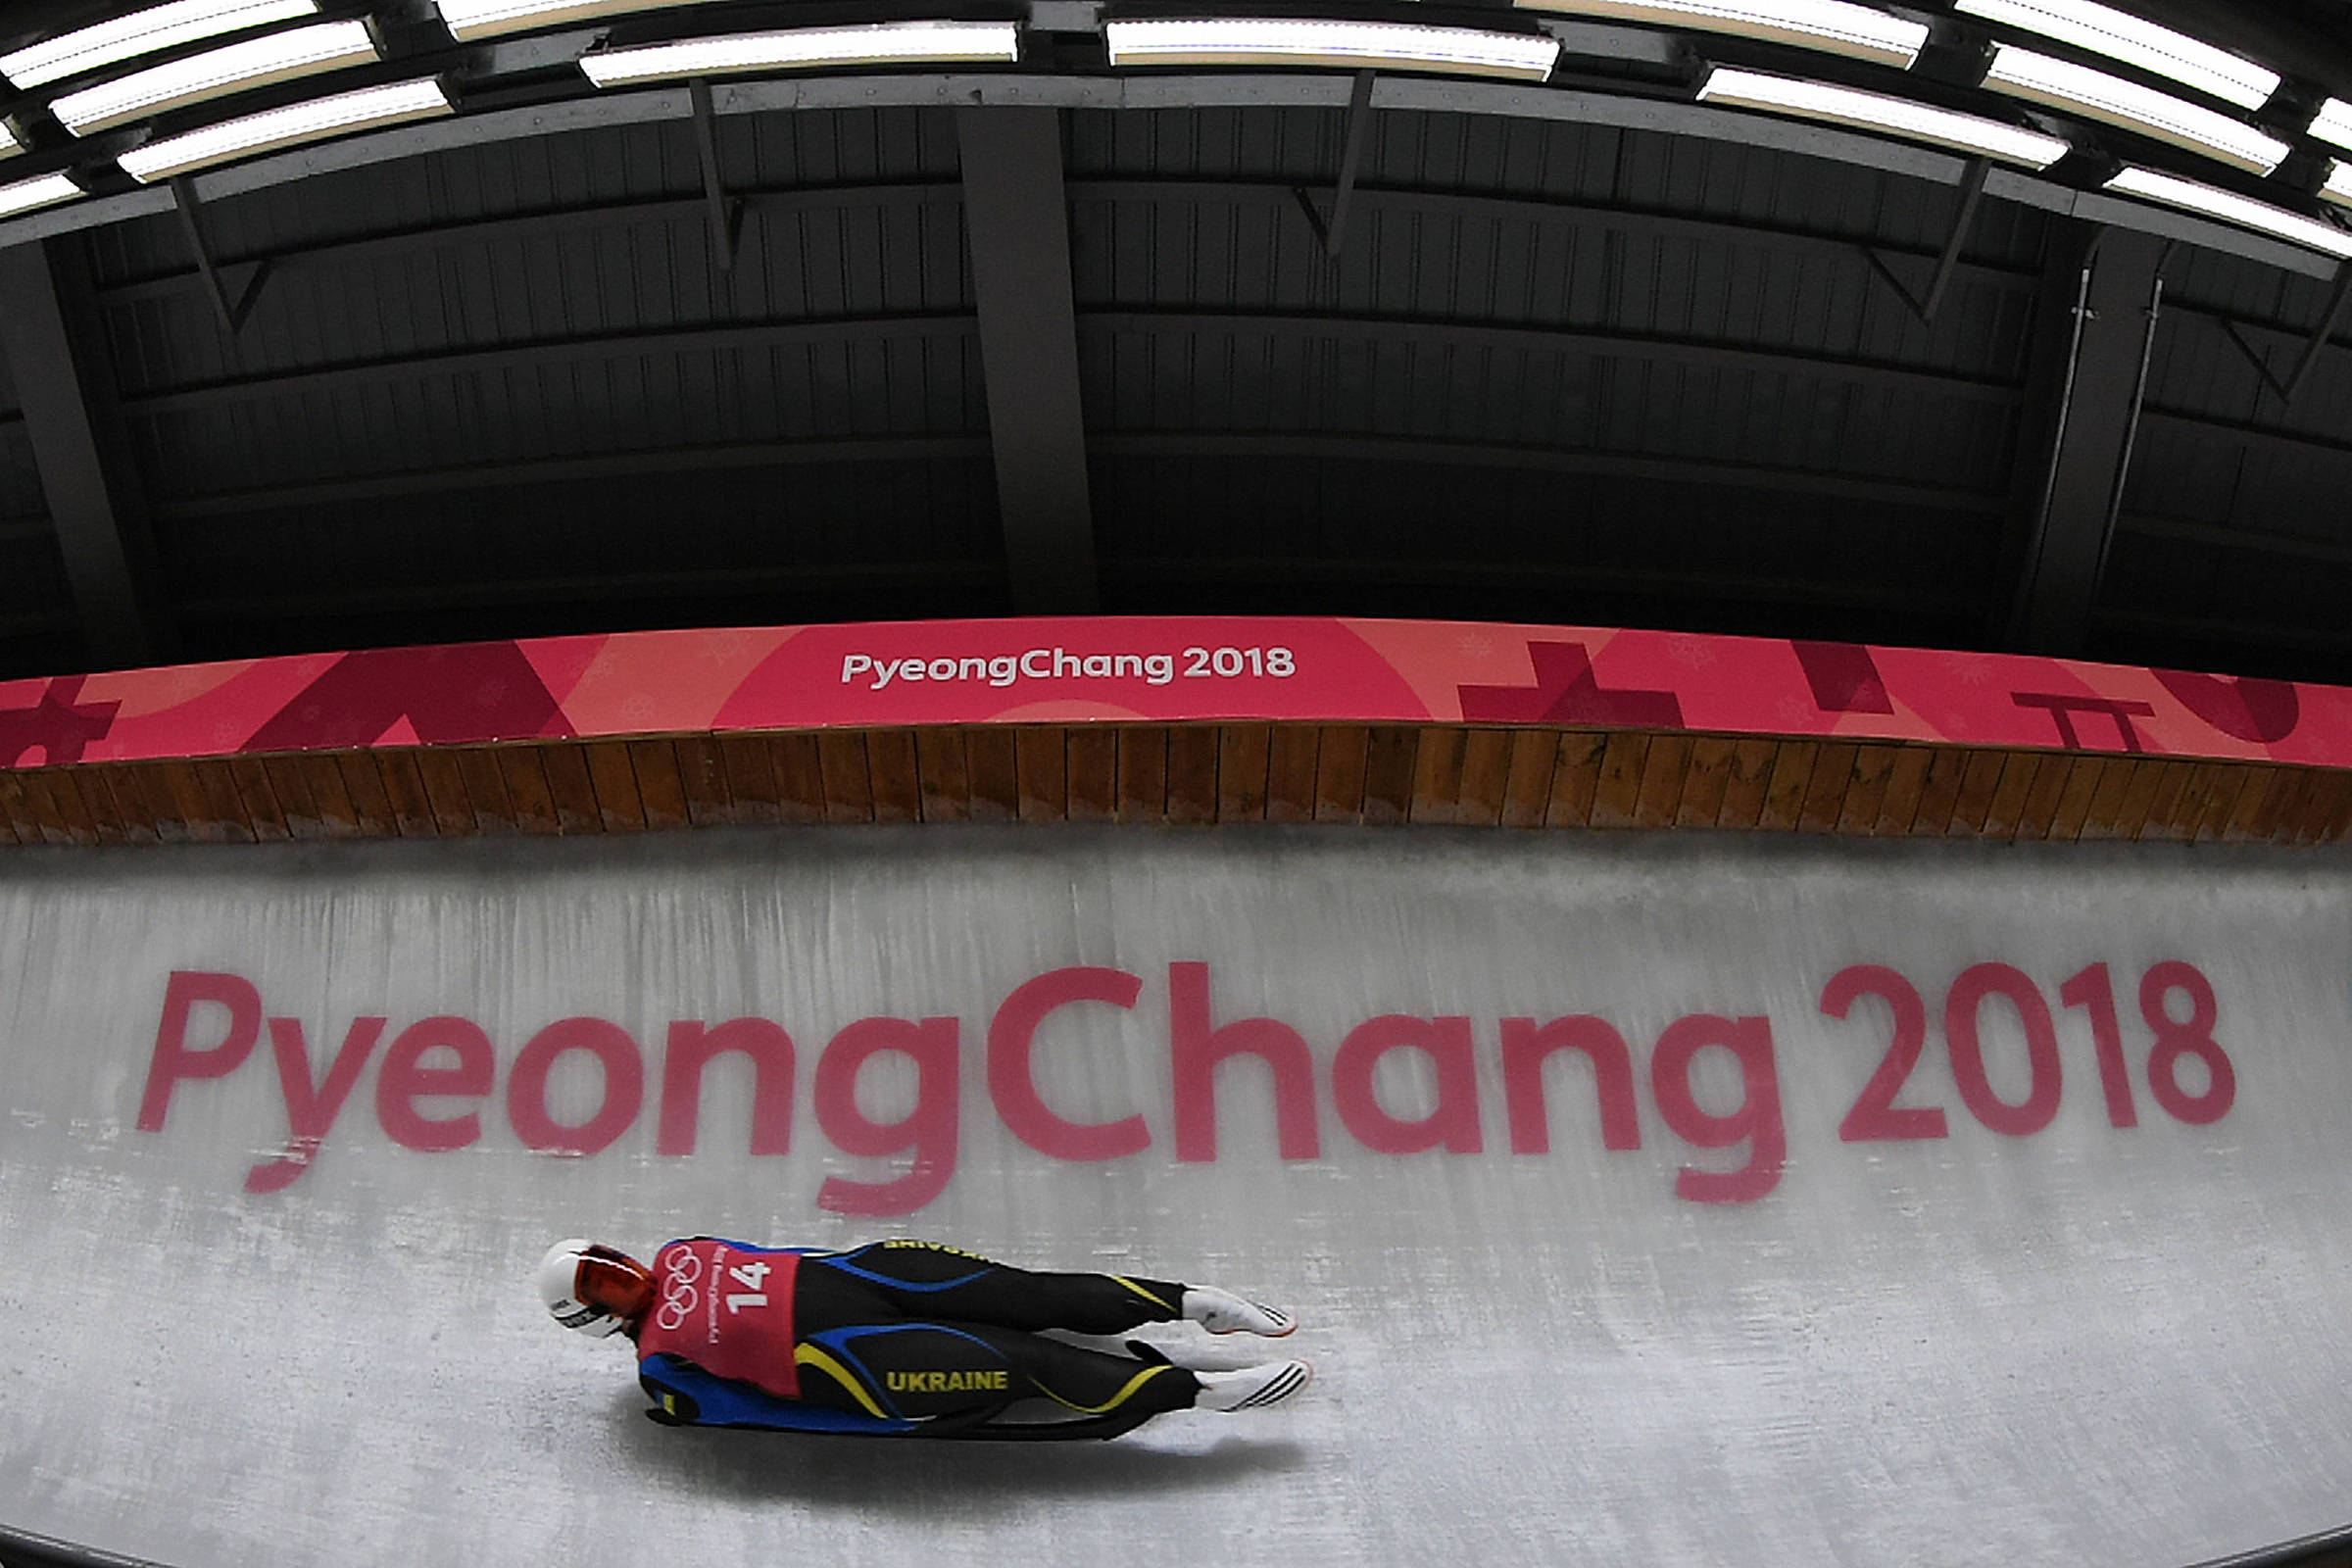 Olímpiadas de Inverno em PyeongChang - NHeLas